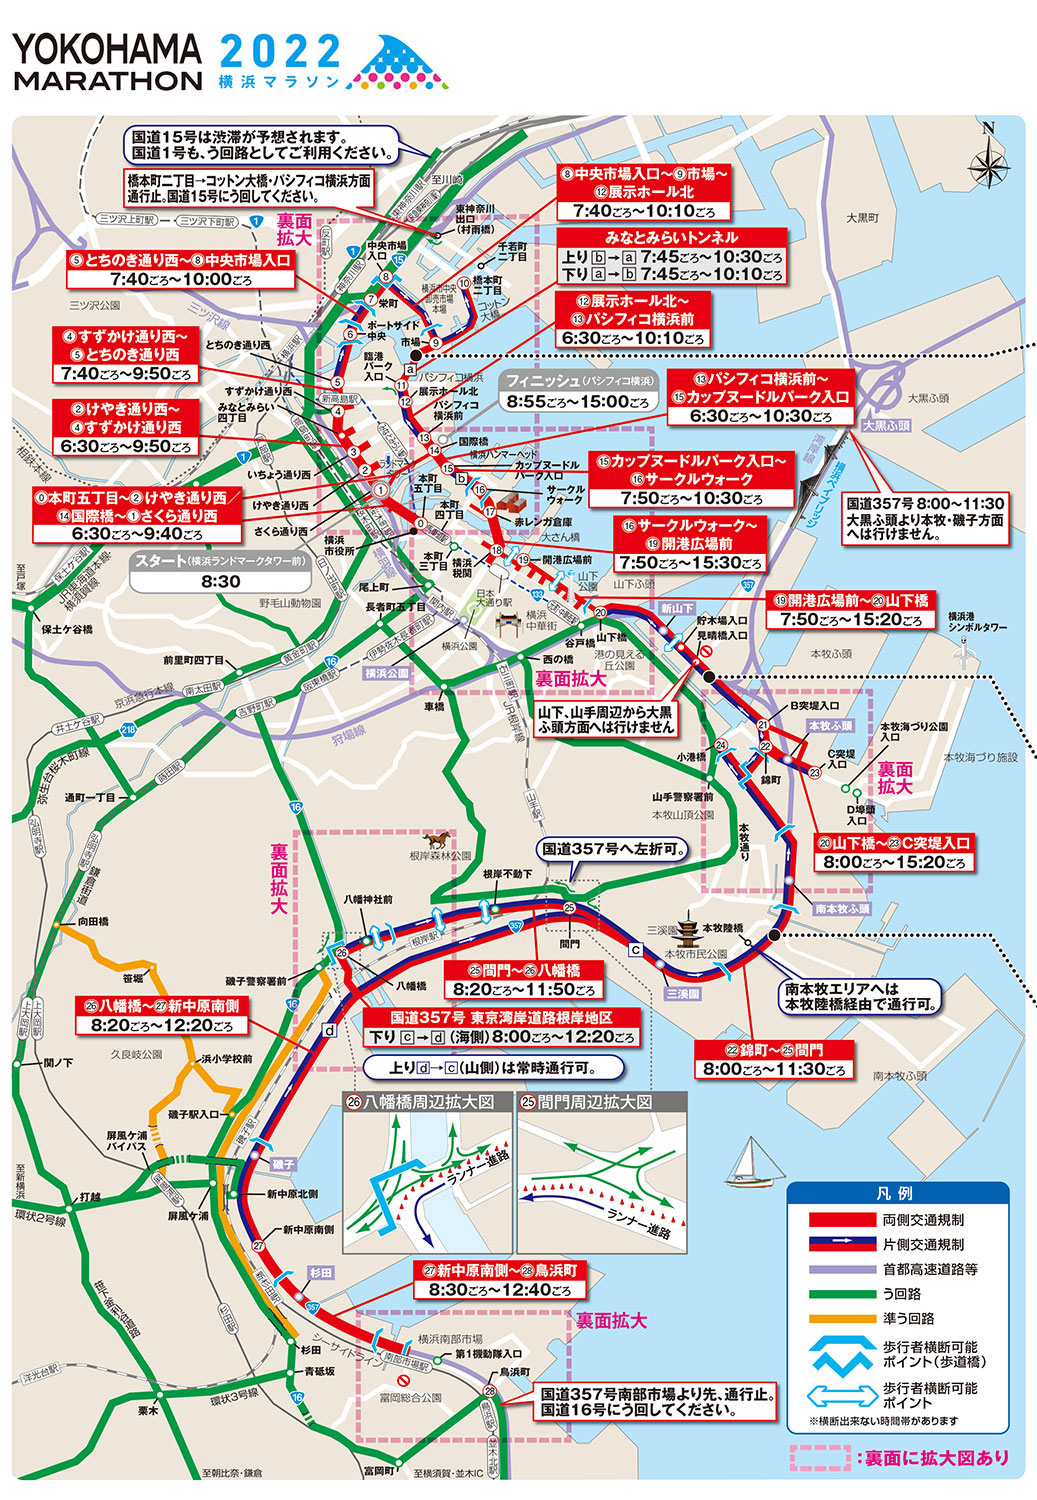 【お知らせ】「横浜マラソン2022」開催に伴う交通規制(10/30)page-visual 【お知らせ】「横浜マラソン2022」開催に伴う交通規制(10/30)ビジュアル